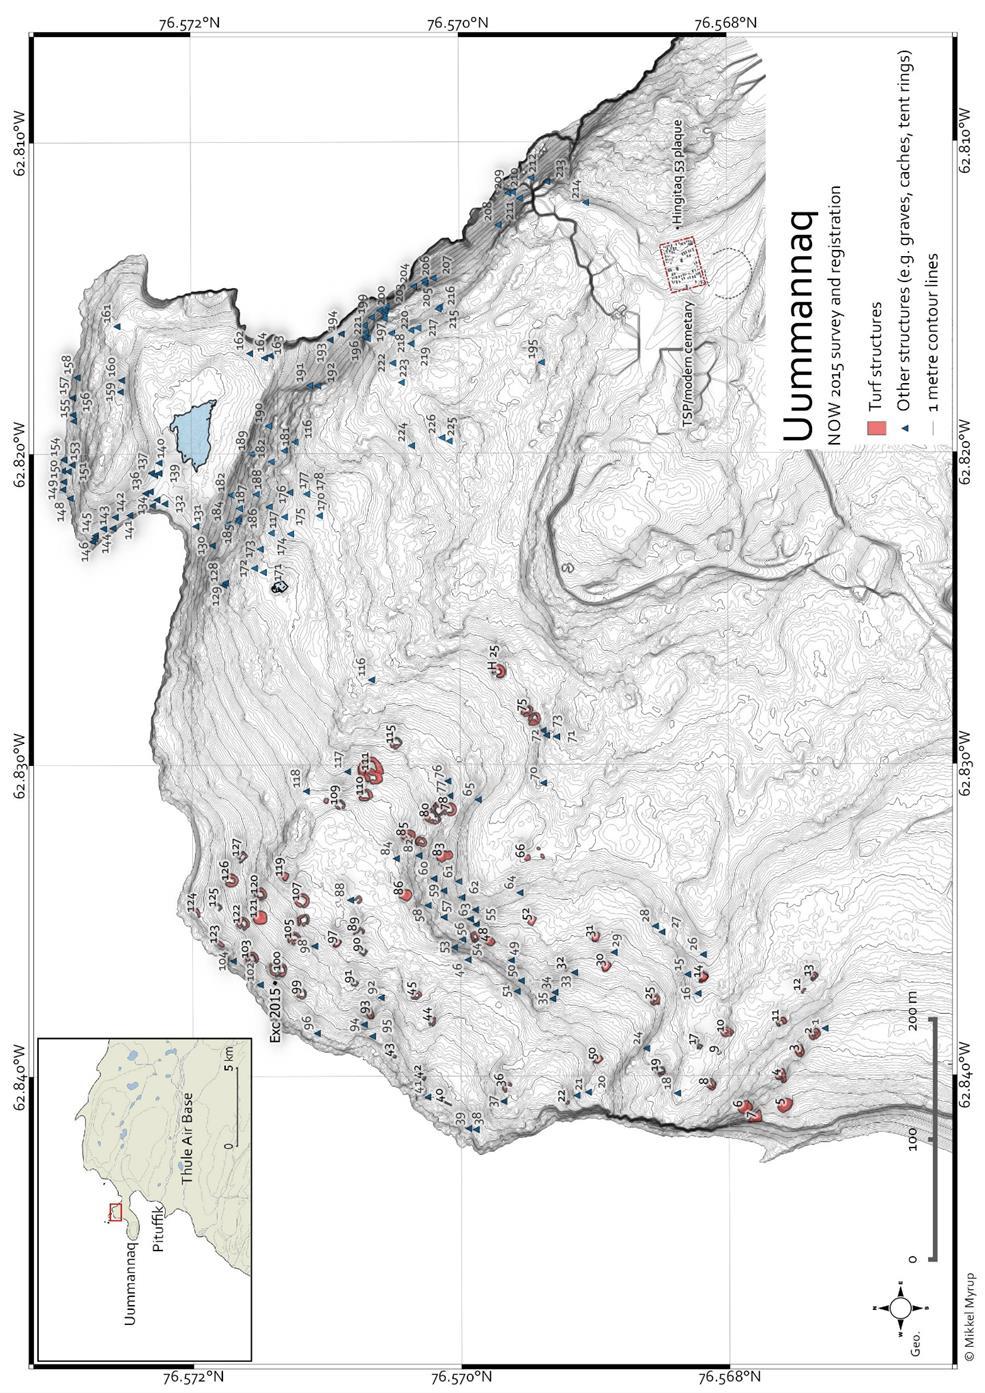 Topografisk kort over Uummannaaq-bopladsen baseret på en